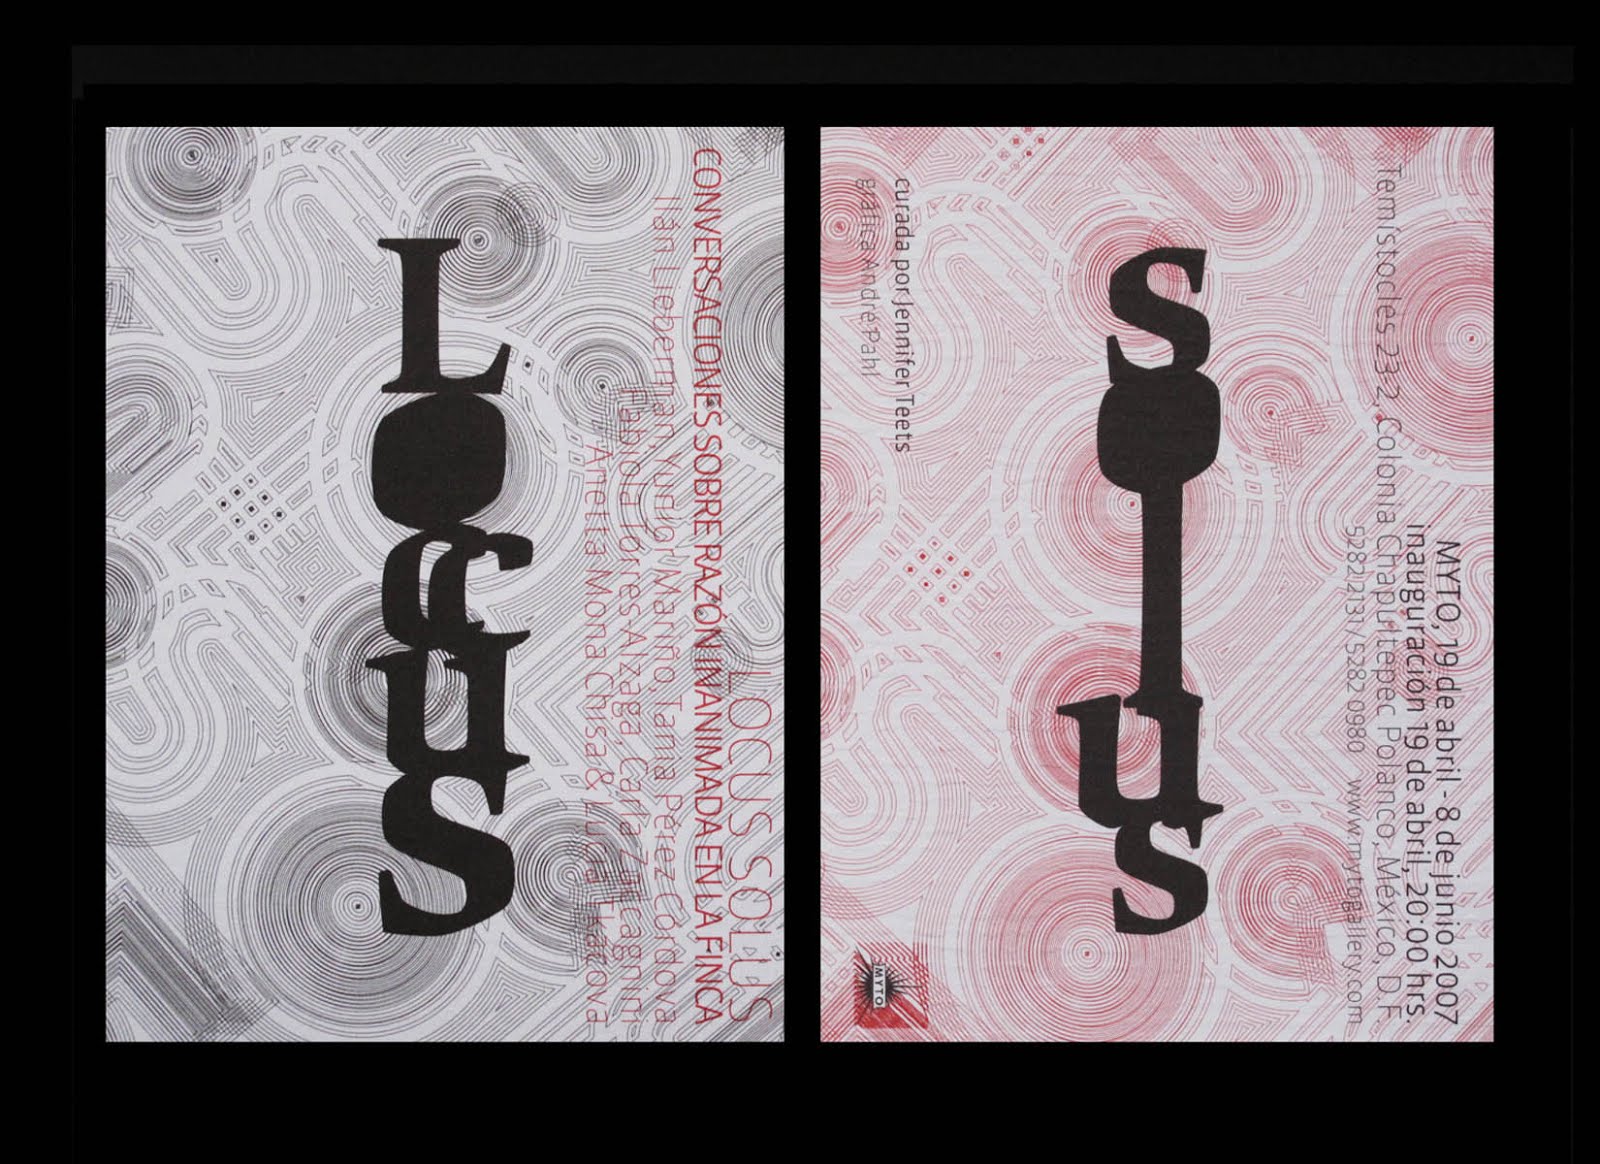 Locus Solus, 2007